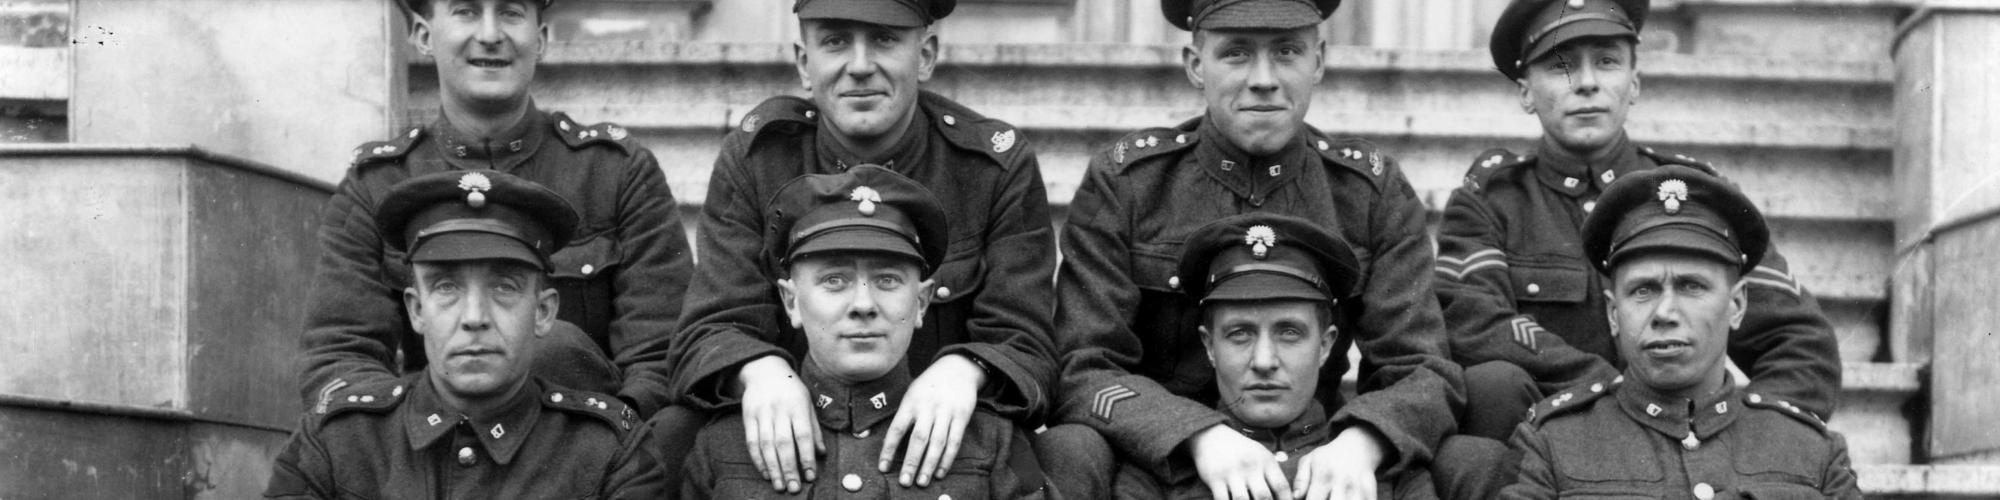 Soldats canadiens Première Guerre mondiale 